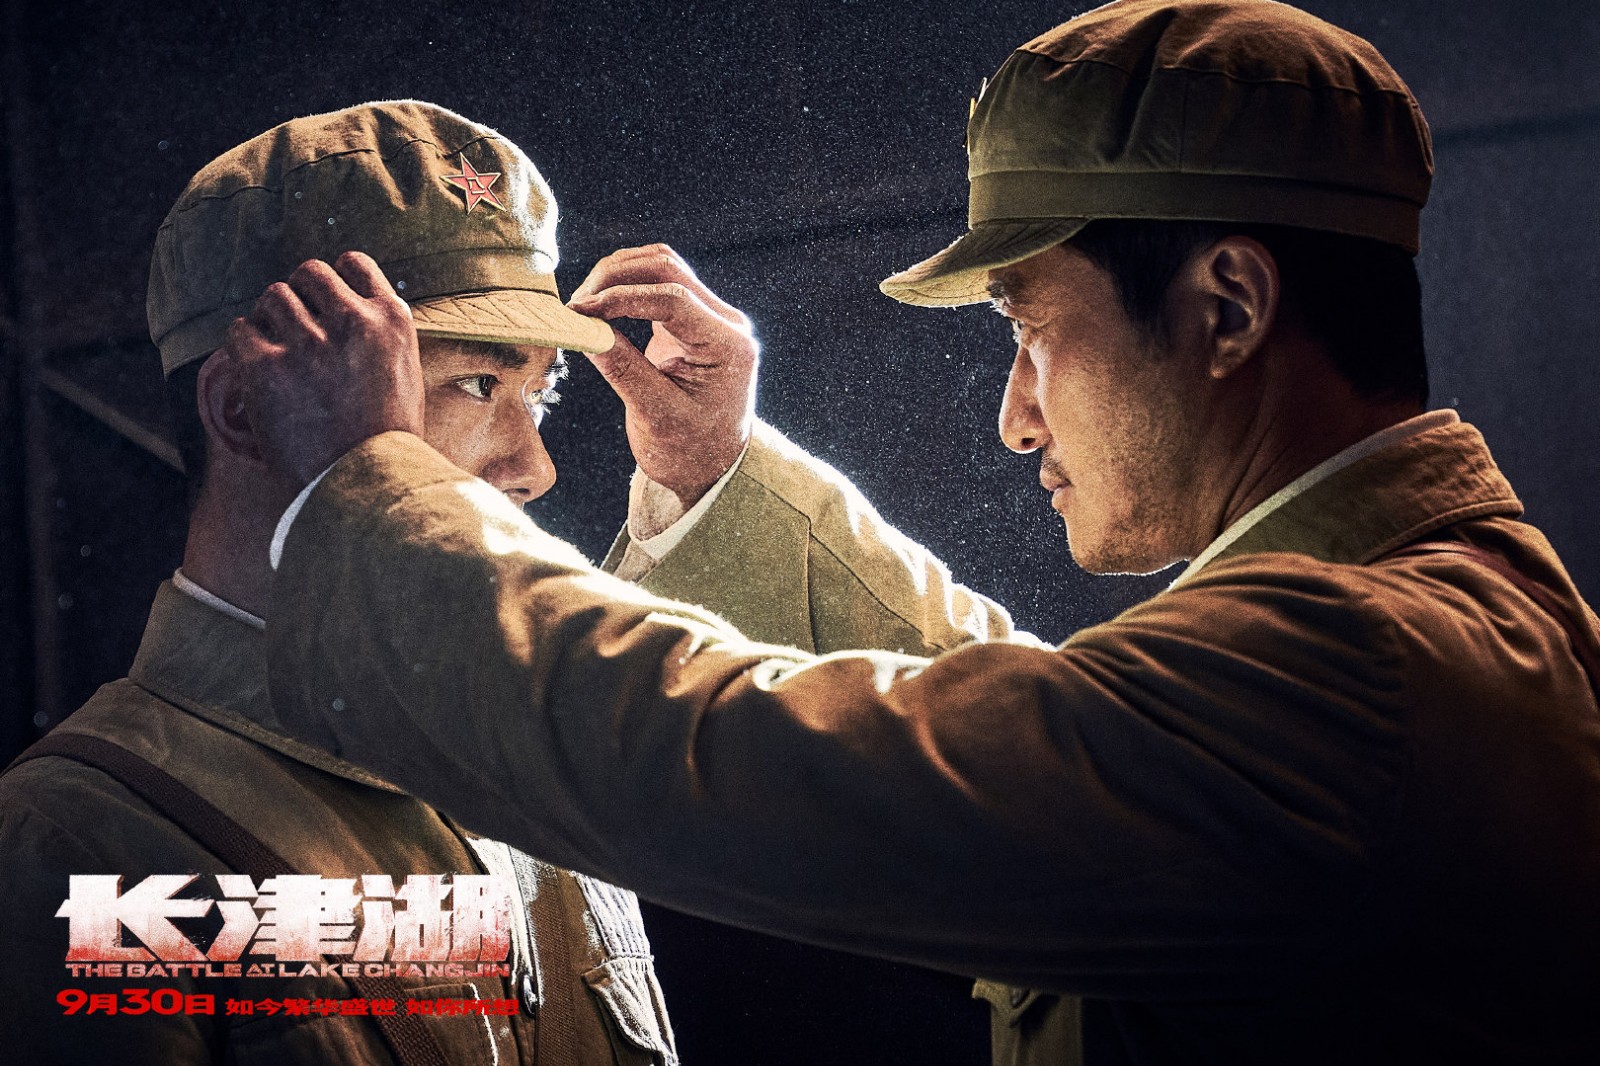 新剧照:《长津湖》以一个英雄连队七连及兄弟部队的行动为主线,讲述